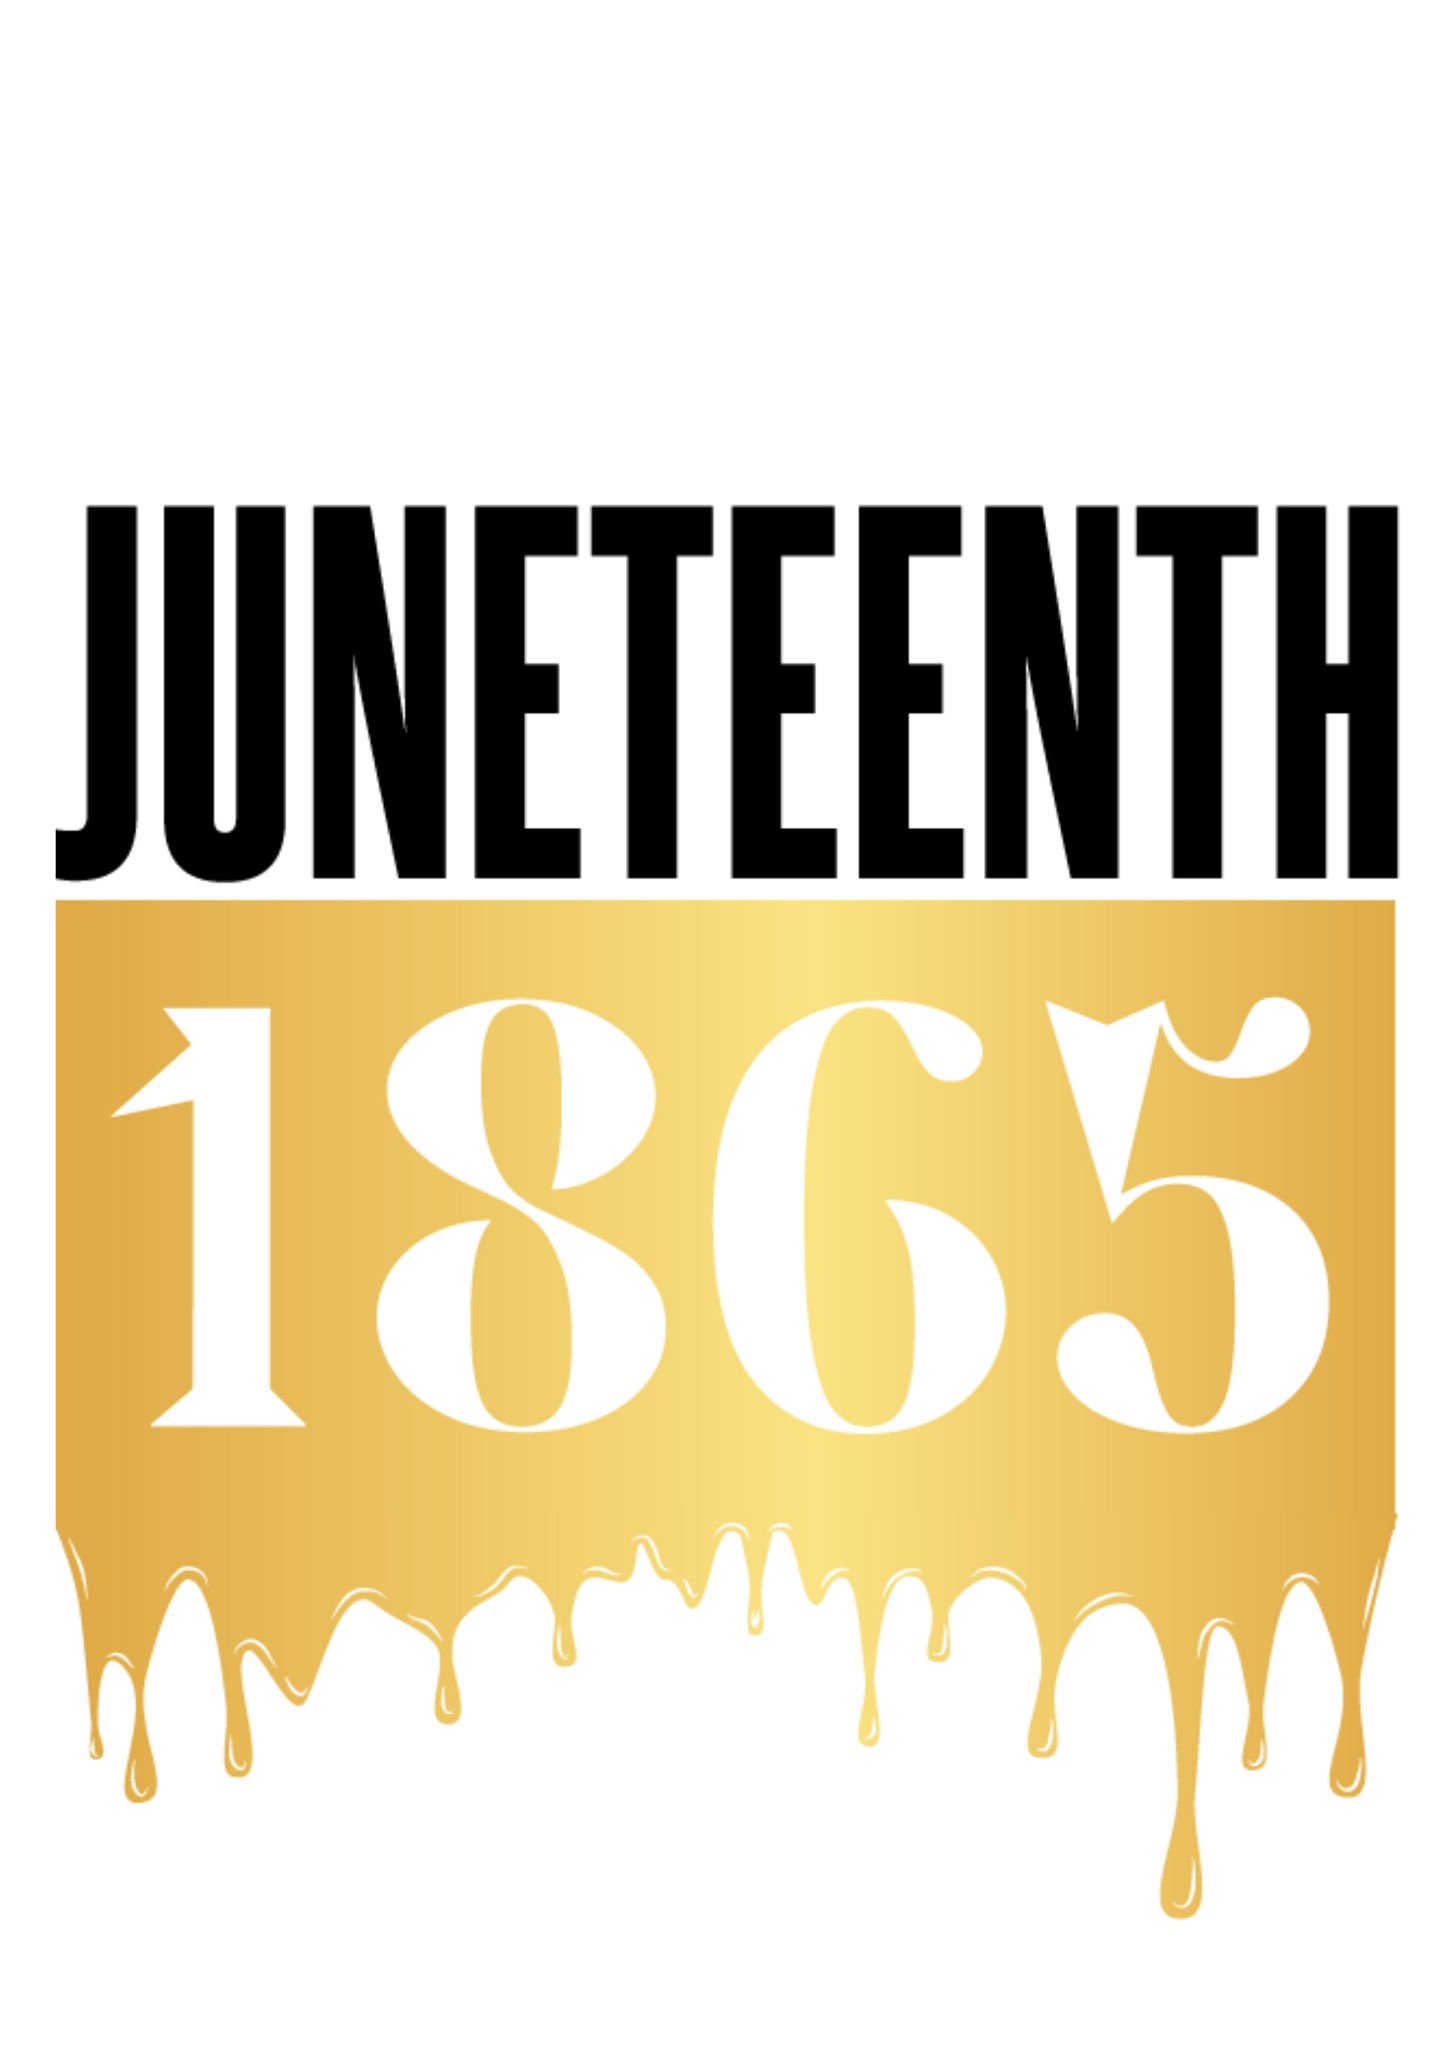 Juneteenth 1865